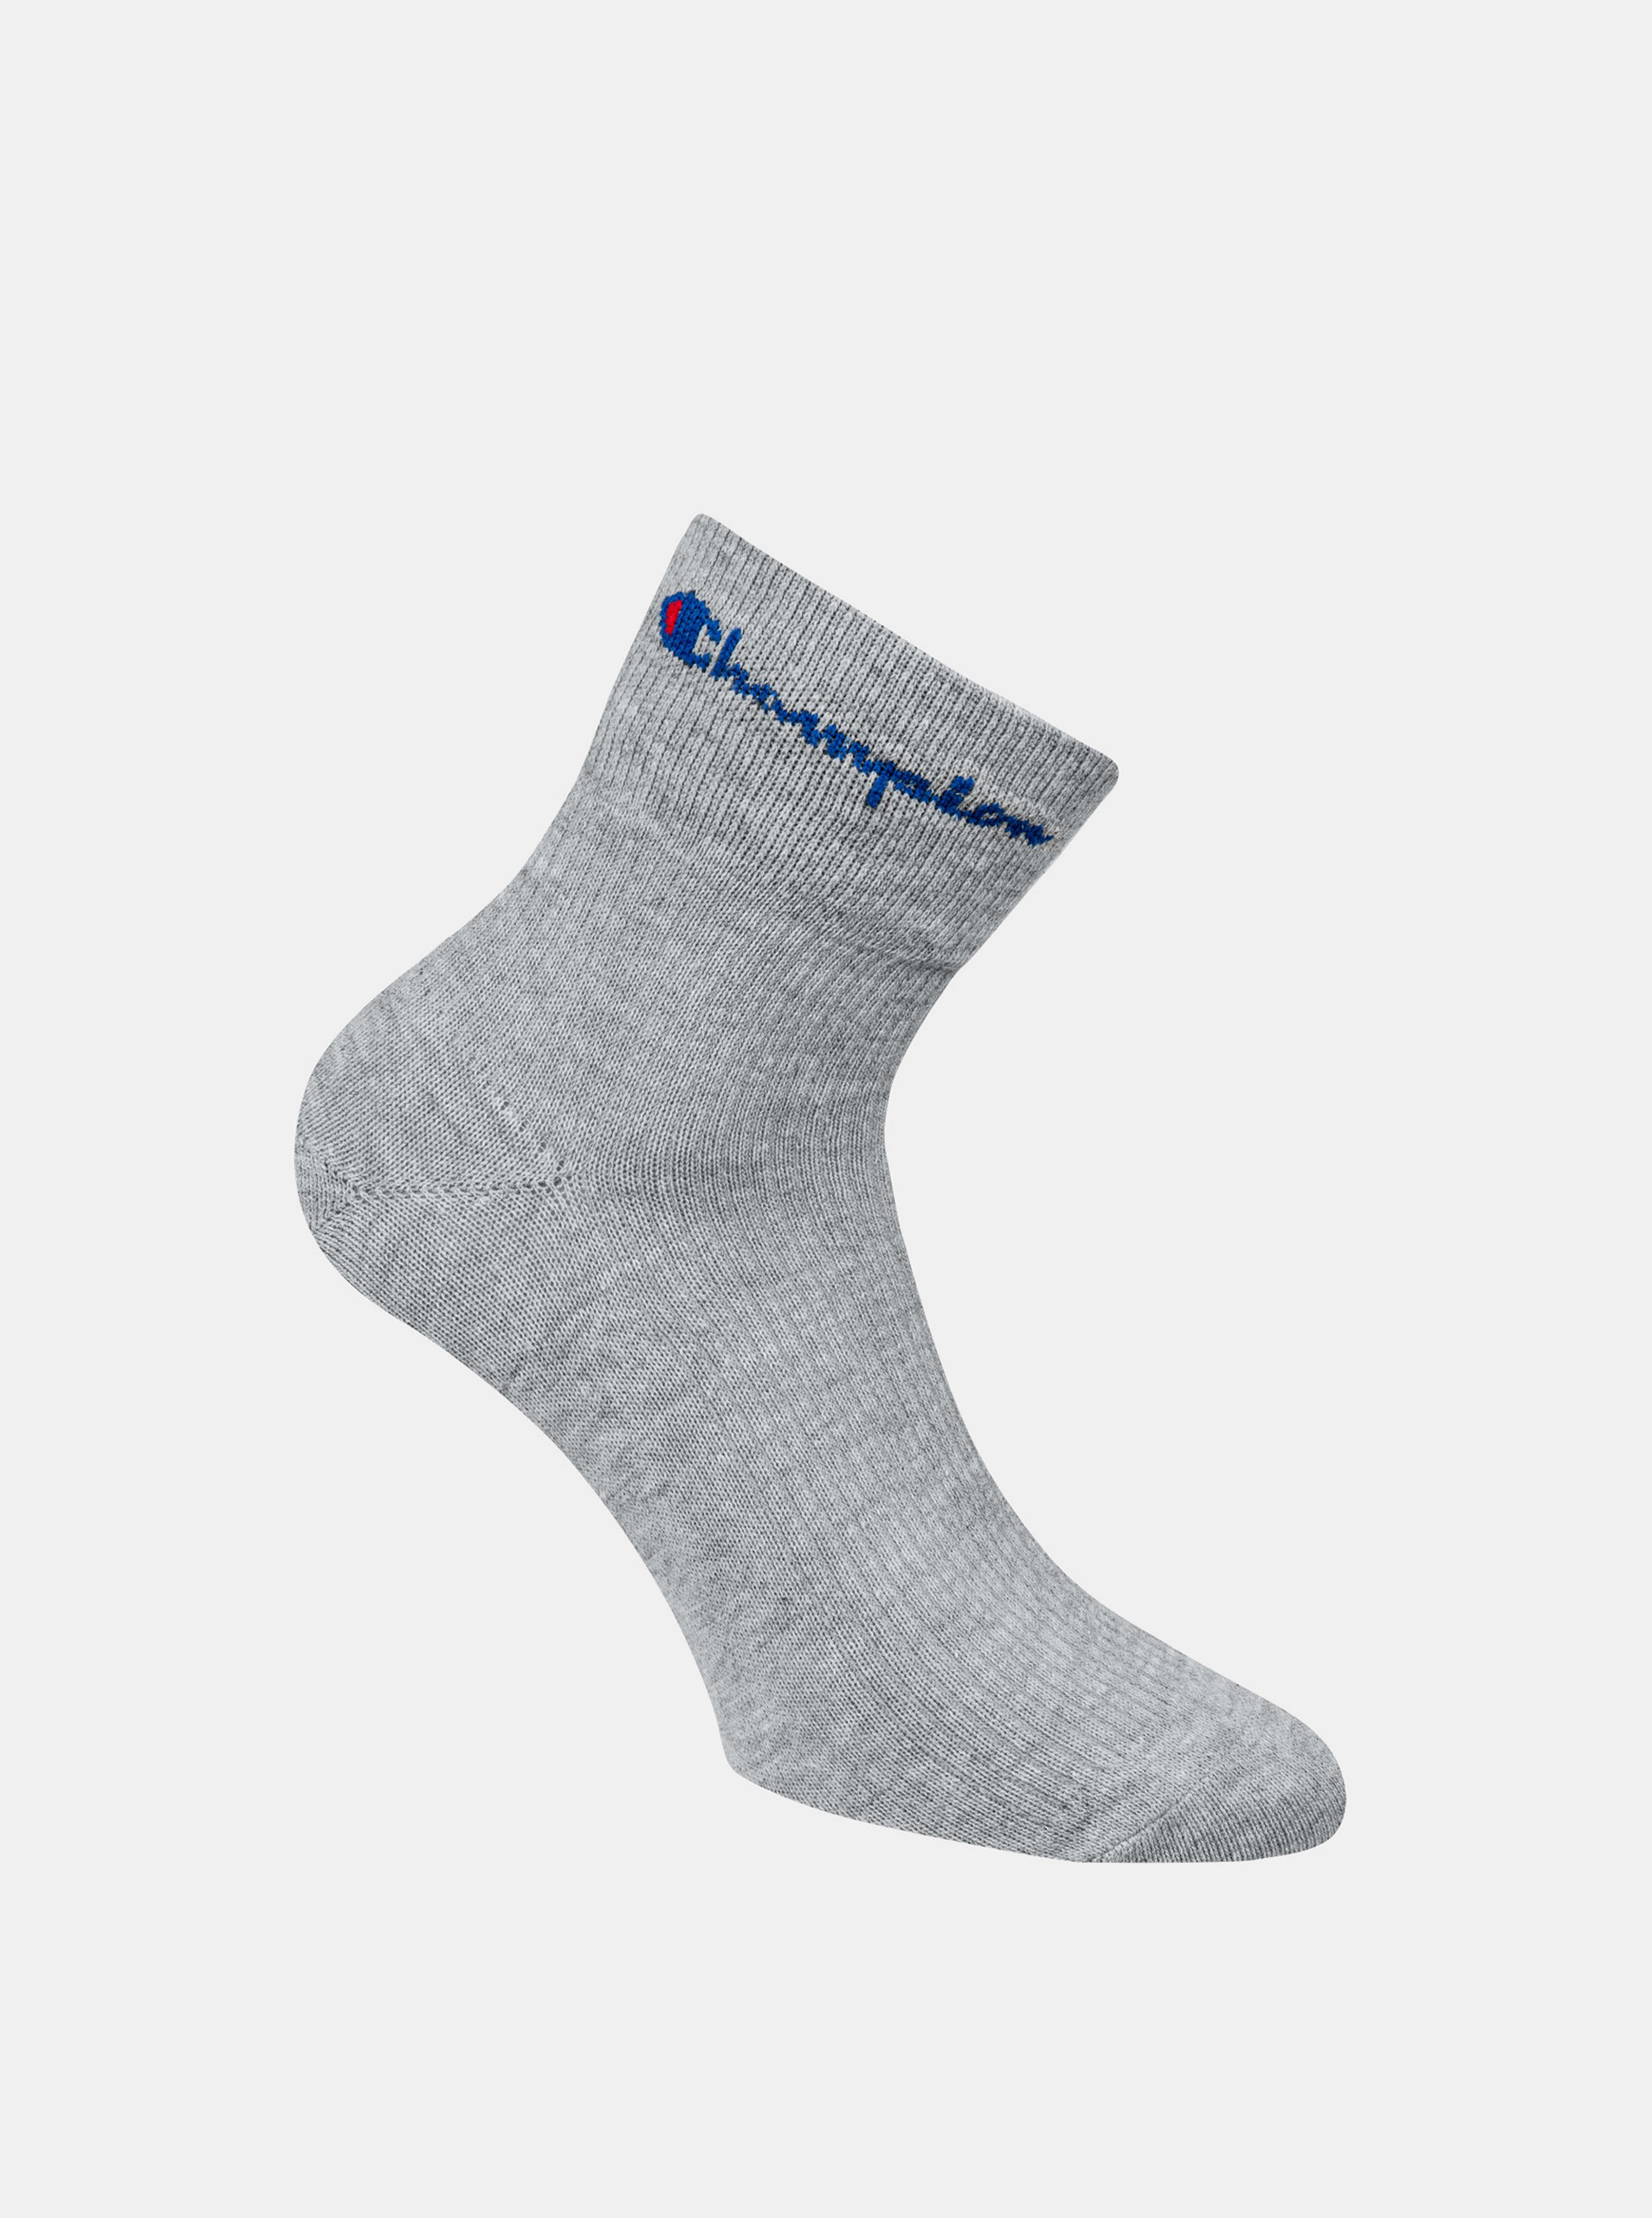 Fotografie CHAMPION ANKLE ROCHESTER REVERSE SOCKS - Sportovní kotníkové ponožky 1 pár - grey